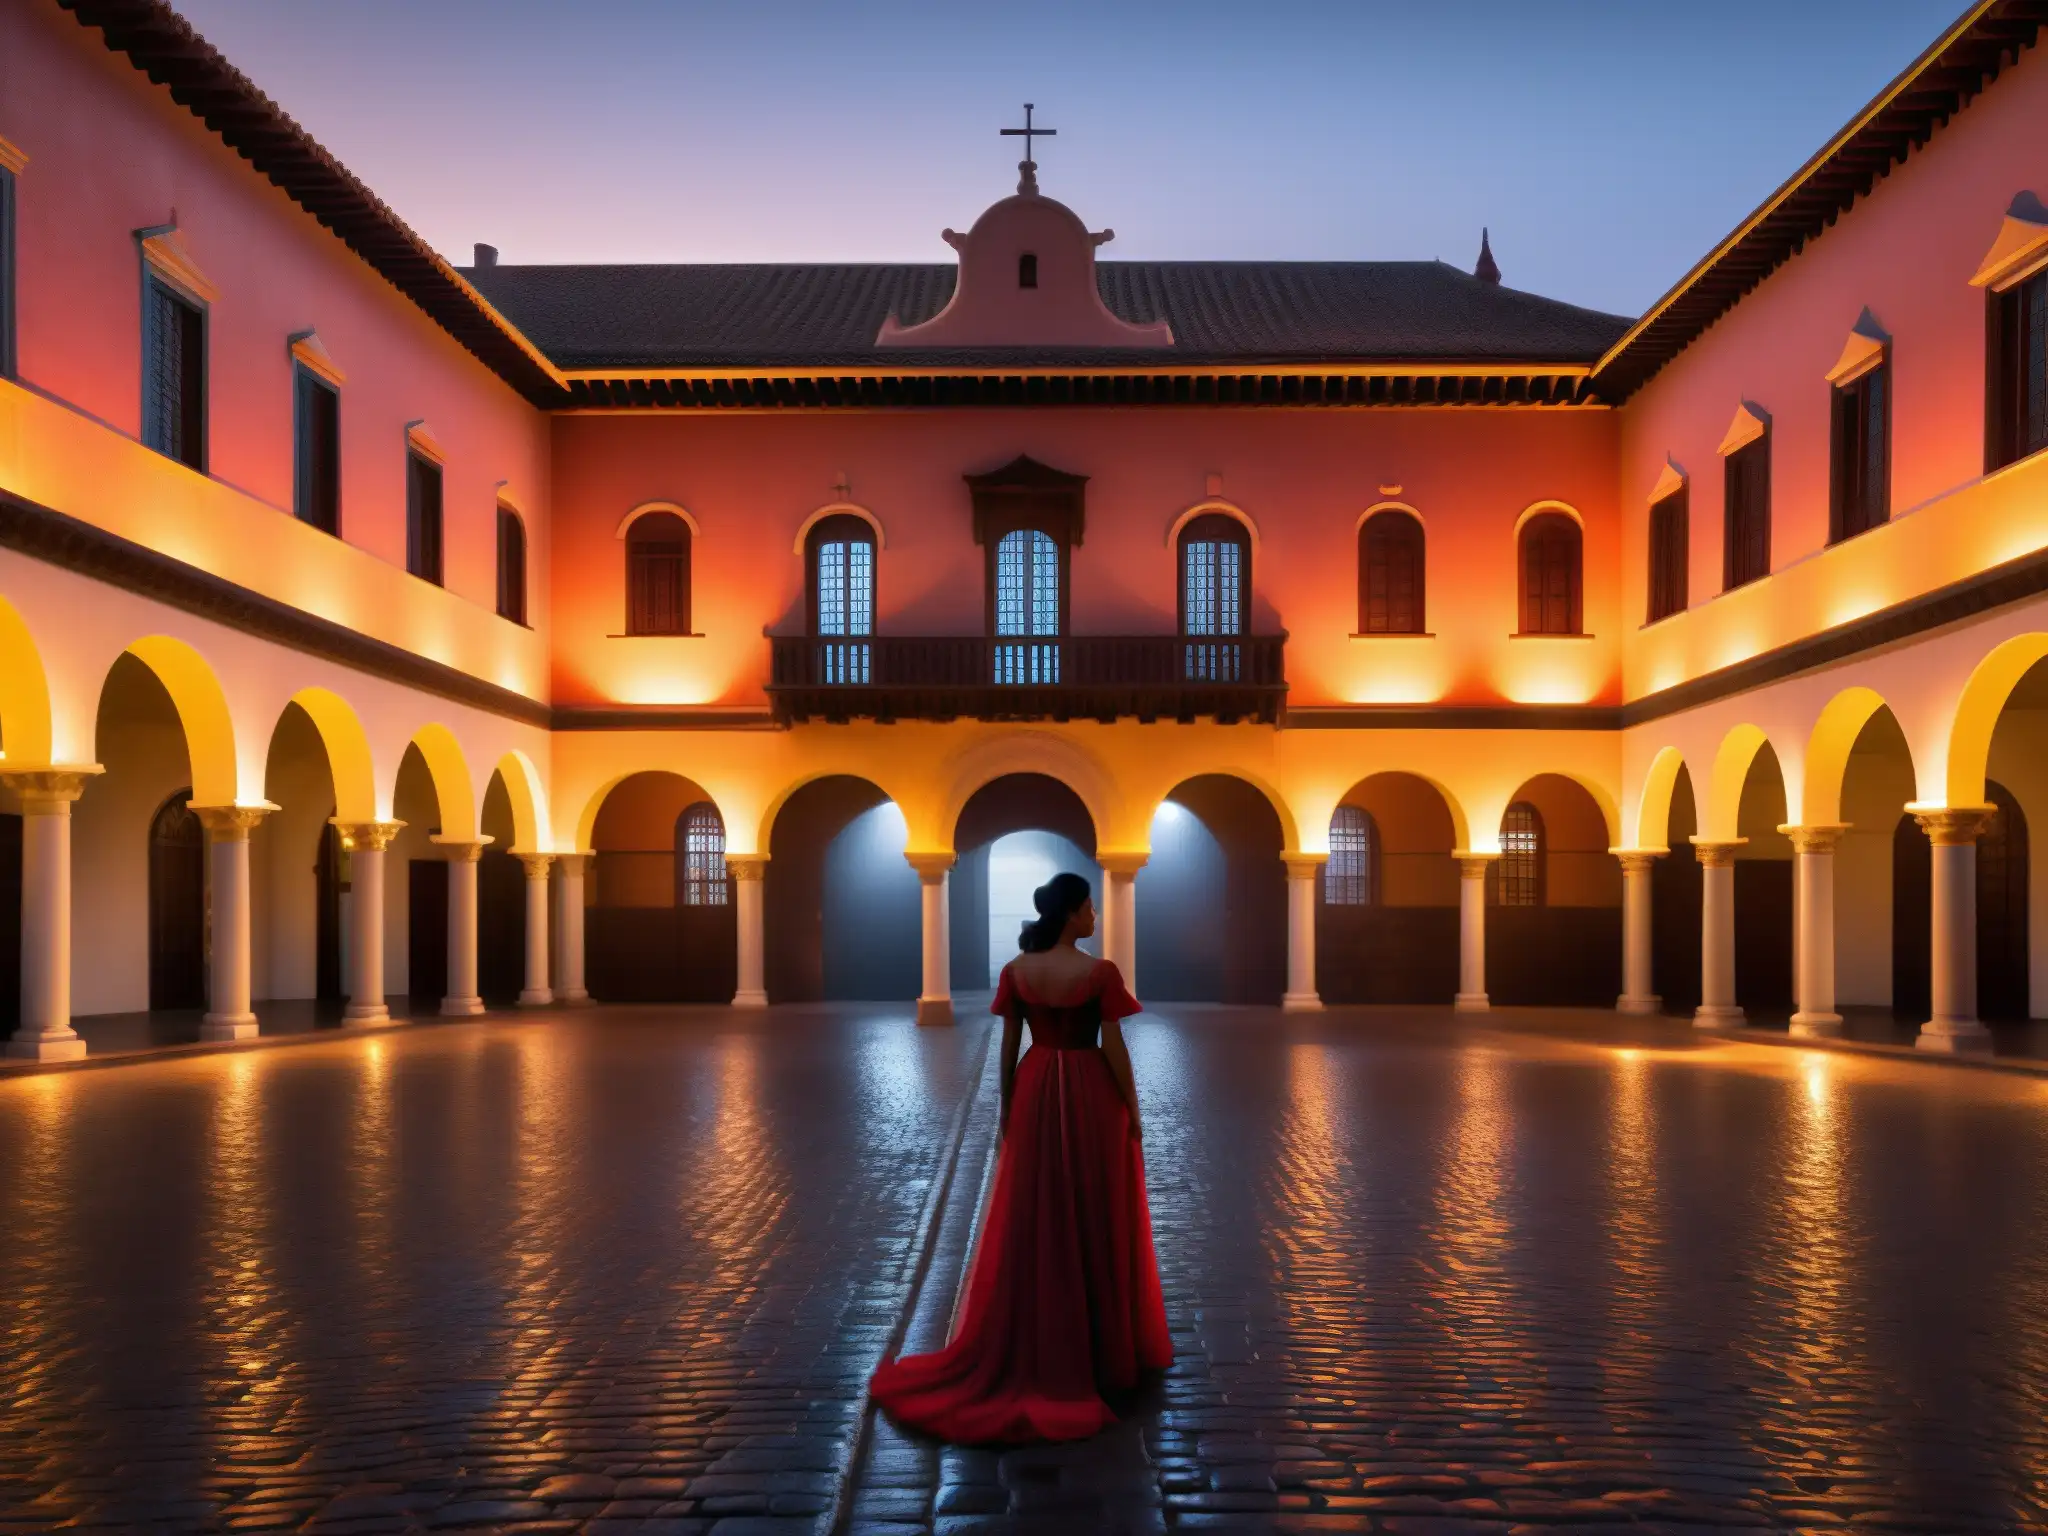 Palacio San Francisco de noche, con una misteriosa niebla y la presencia de la Dama de rojo, creando un aura sobrenatural